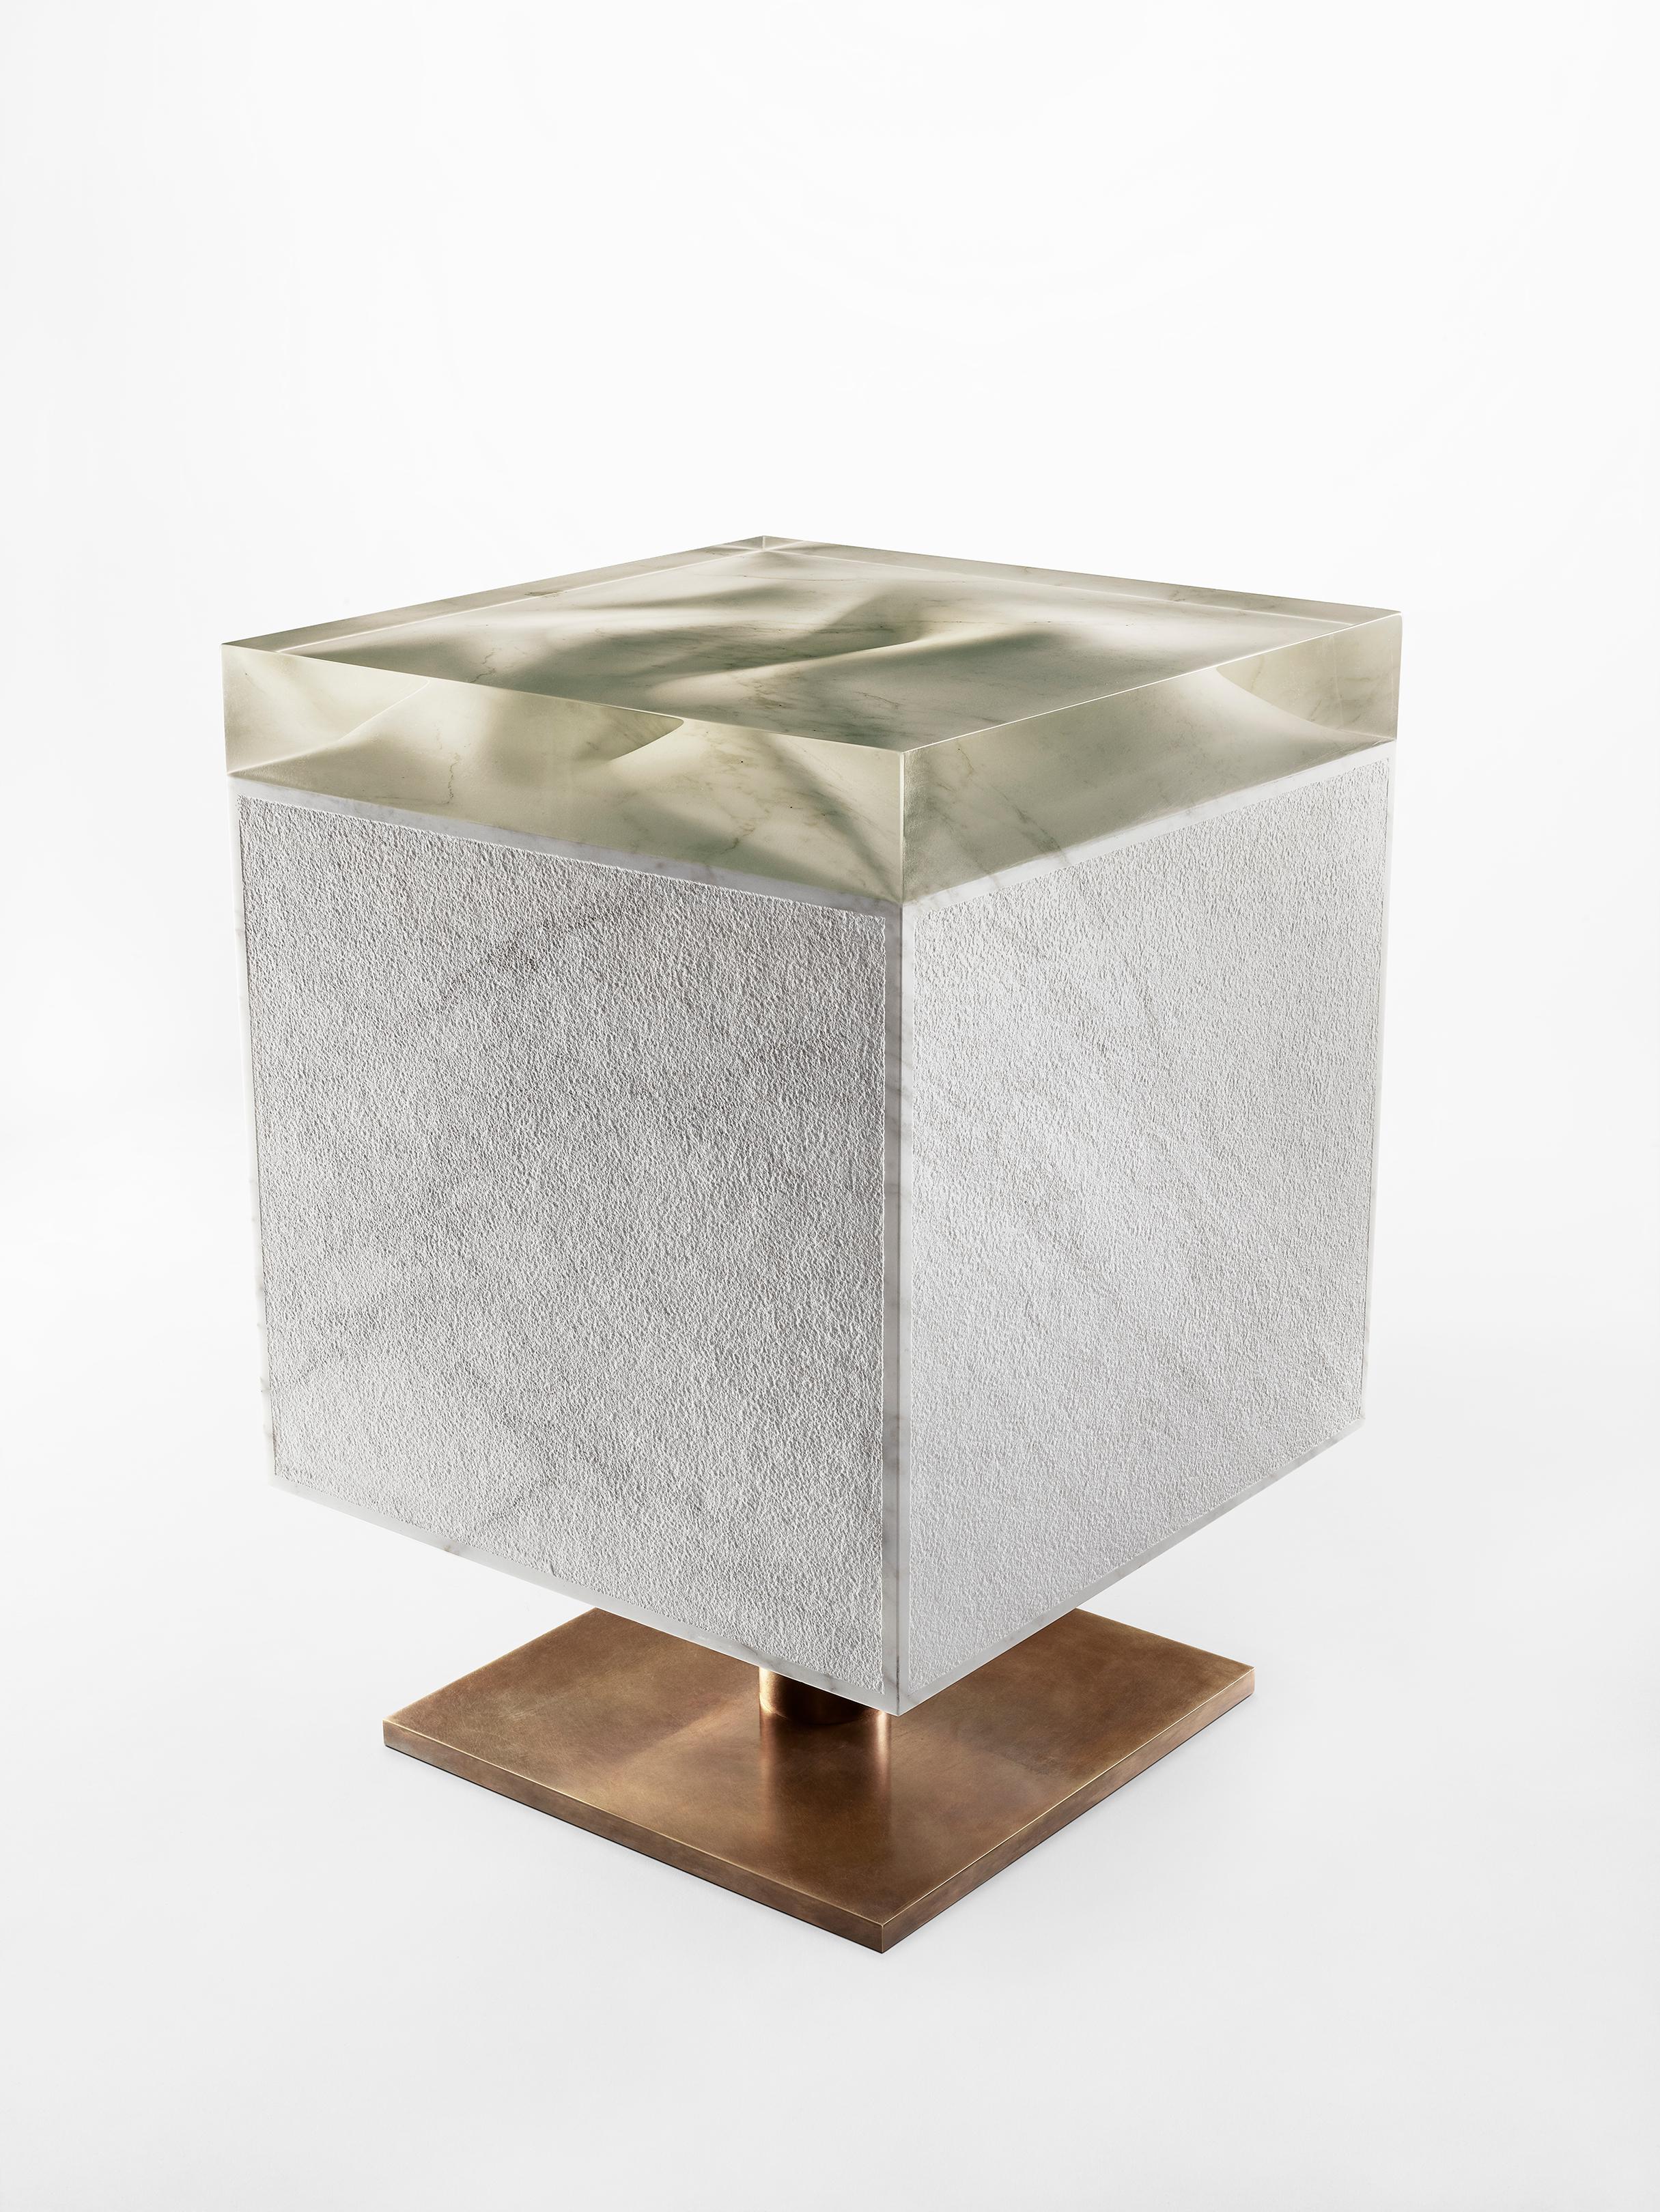 Table cubique en marbre de Jonathan Hansen
12 Editions + 1 AP
Dimensions : 40,6 x 40,6 x 58,4 cm
Matériaux : Marbre Calacatta, Bronze architectural, Résine


SERIES I CAPTUM BIOMORFE est un ensemble de neuf sculptures réalisées par l'artiste